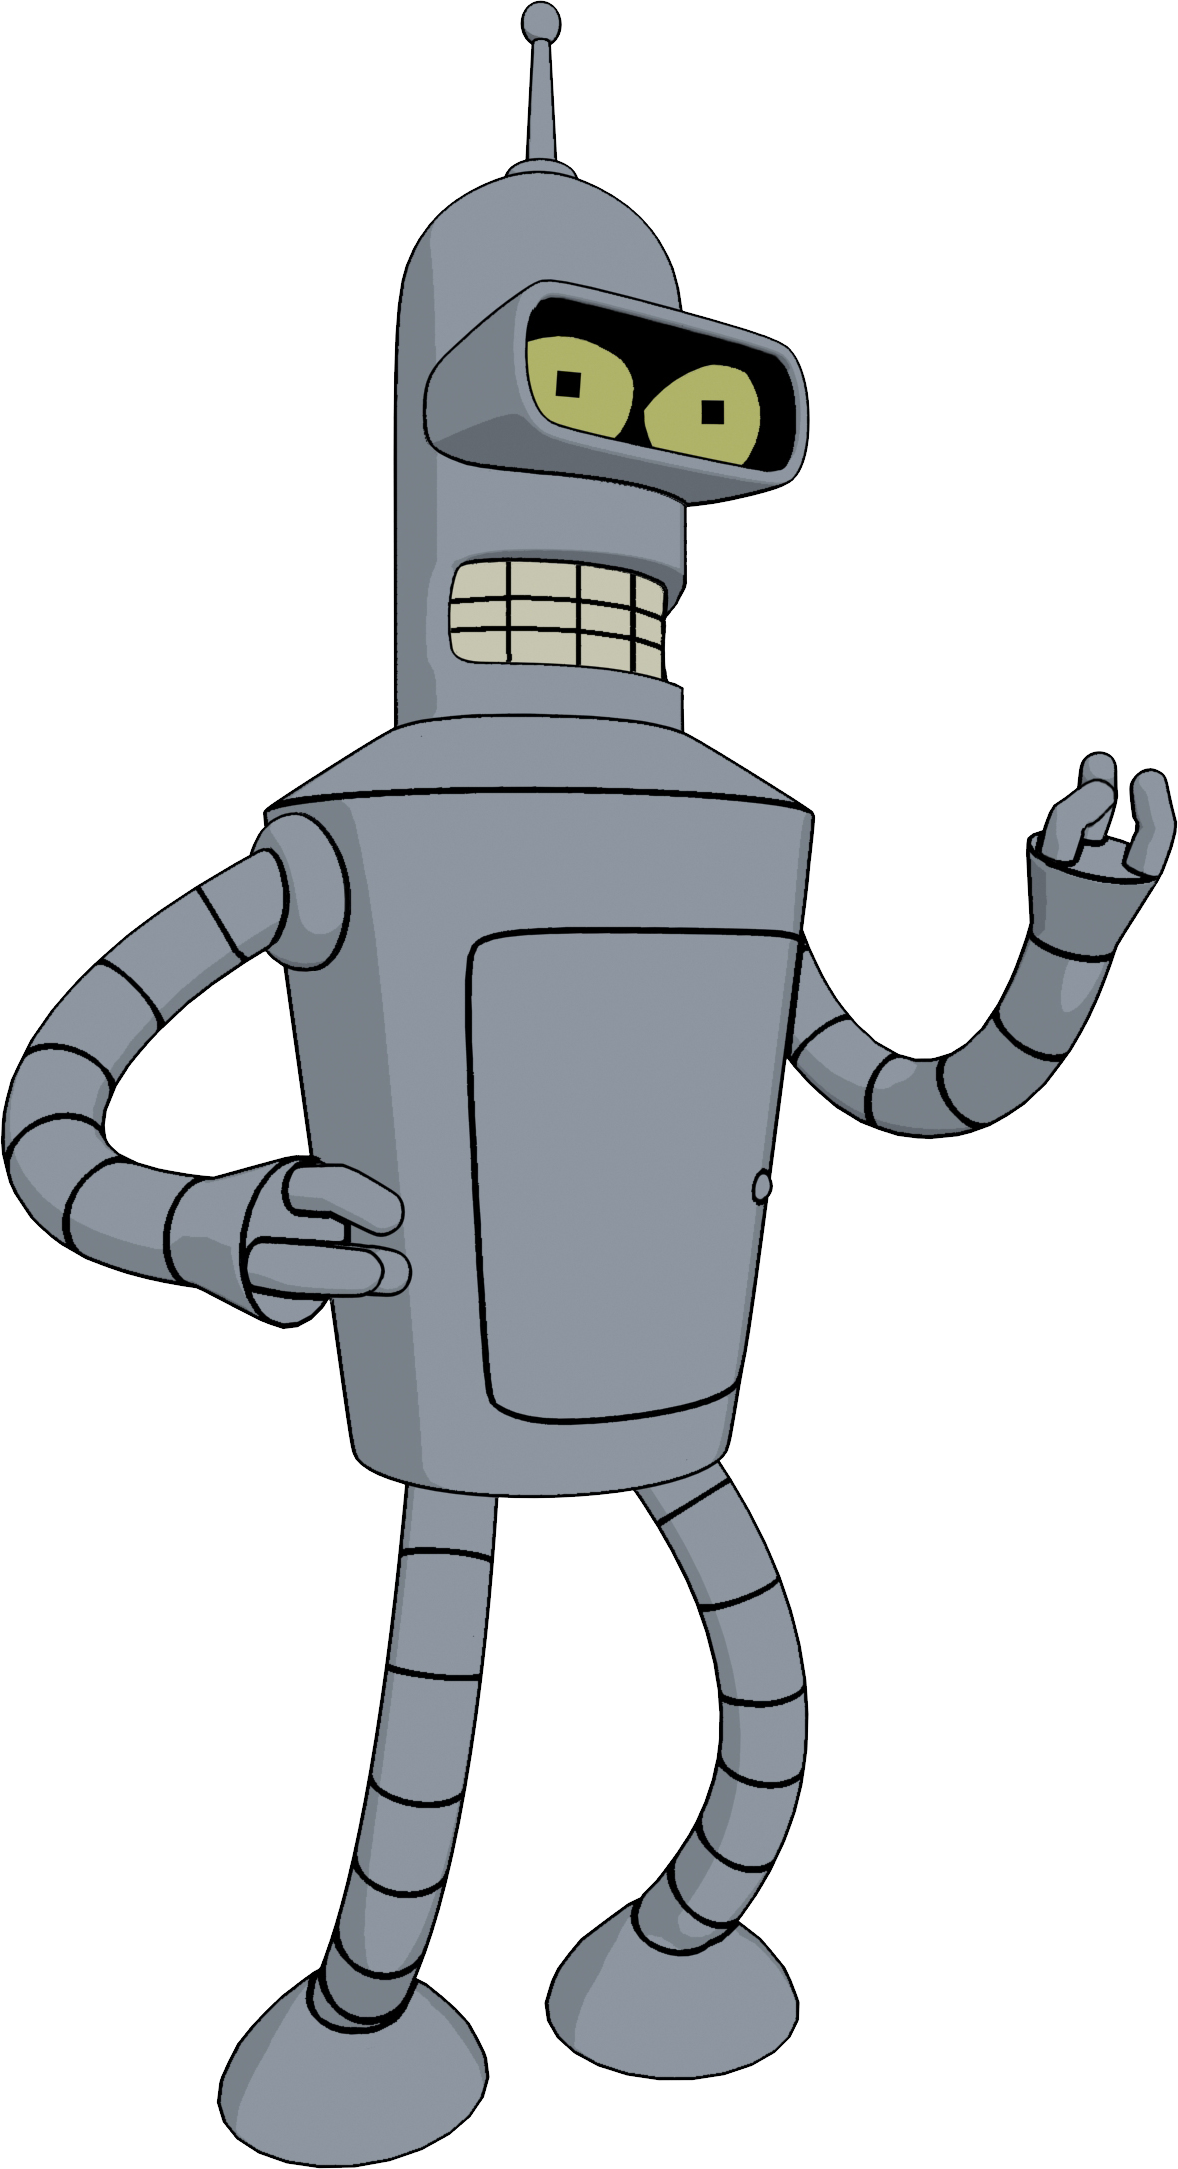 Futurama Bender PNG Image